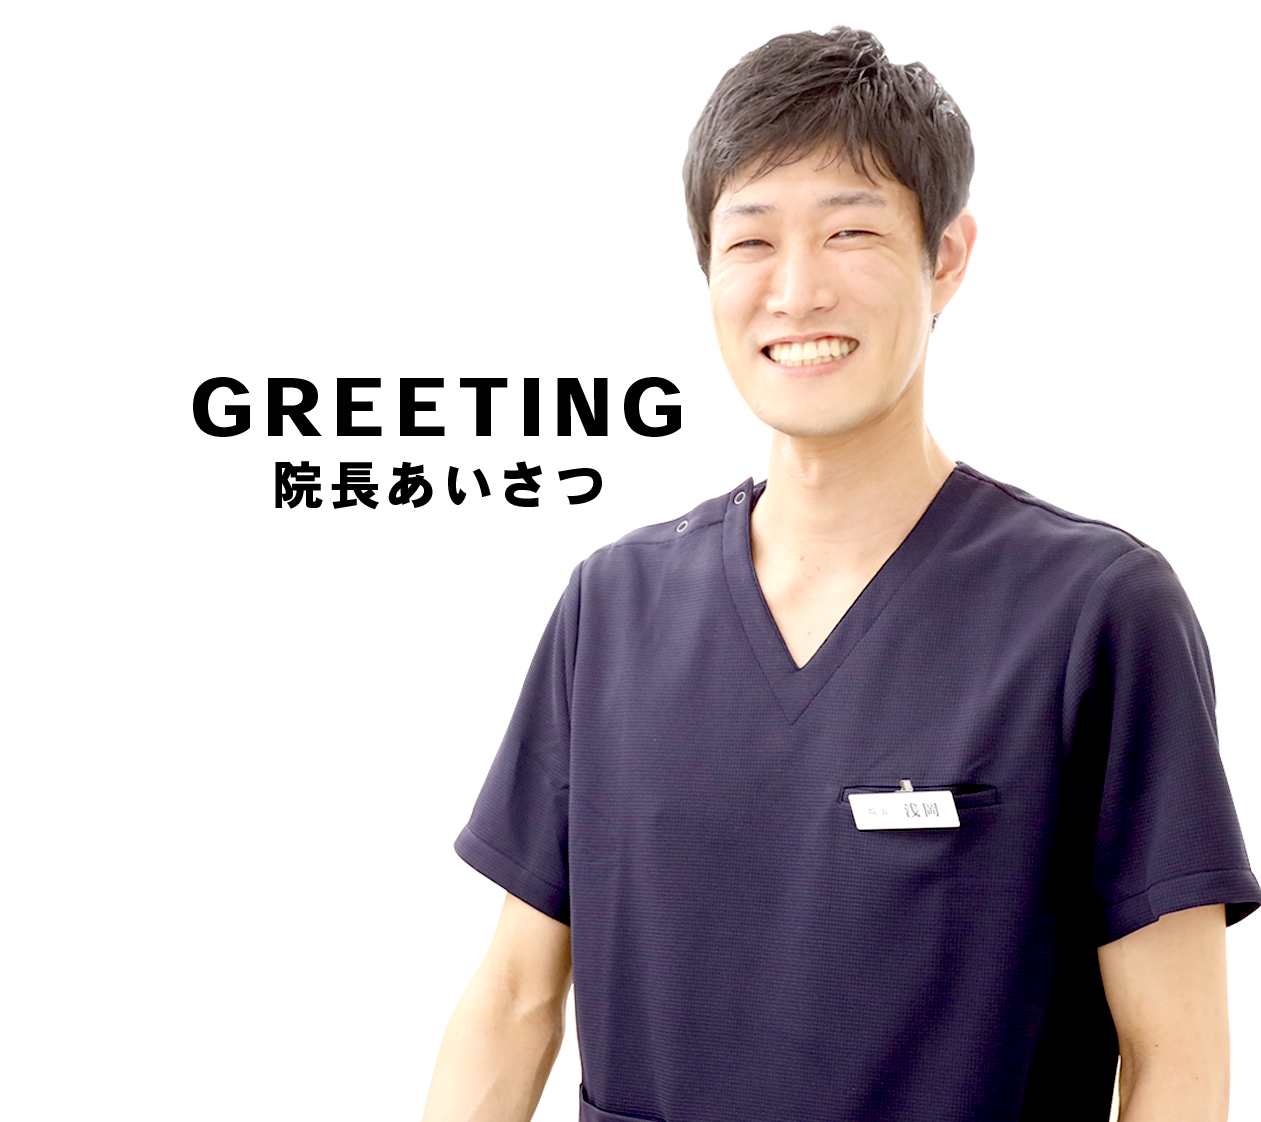 「日本矯正歯科学会」認定医「大学病院・矯正専門医院」勤務経験